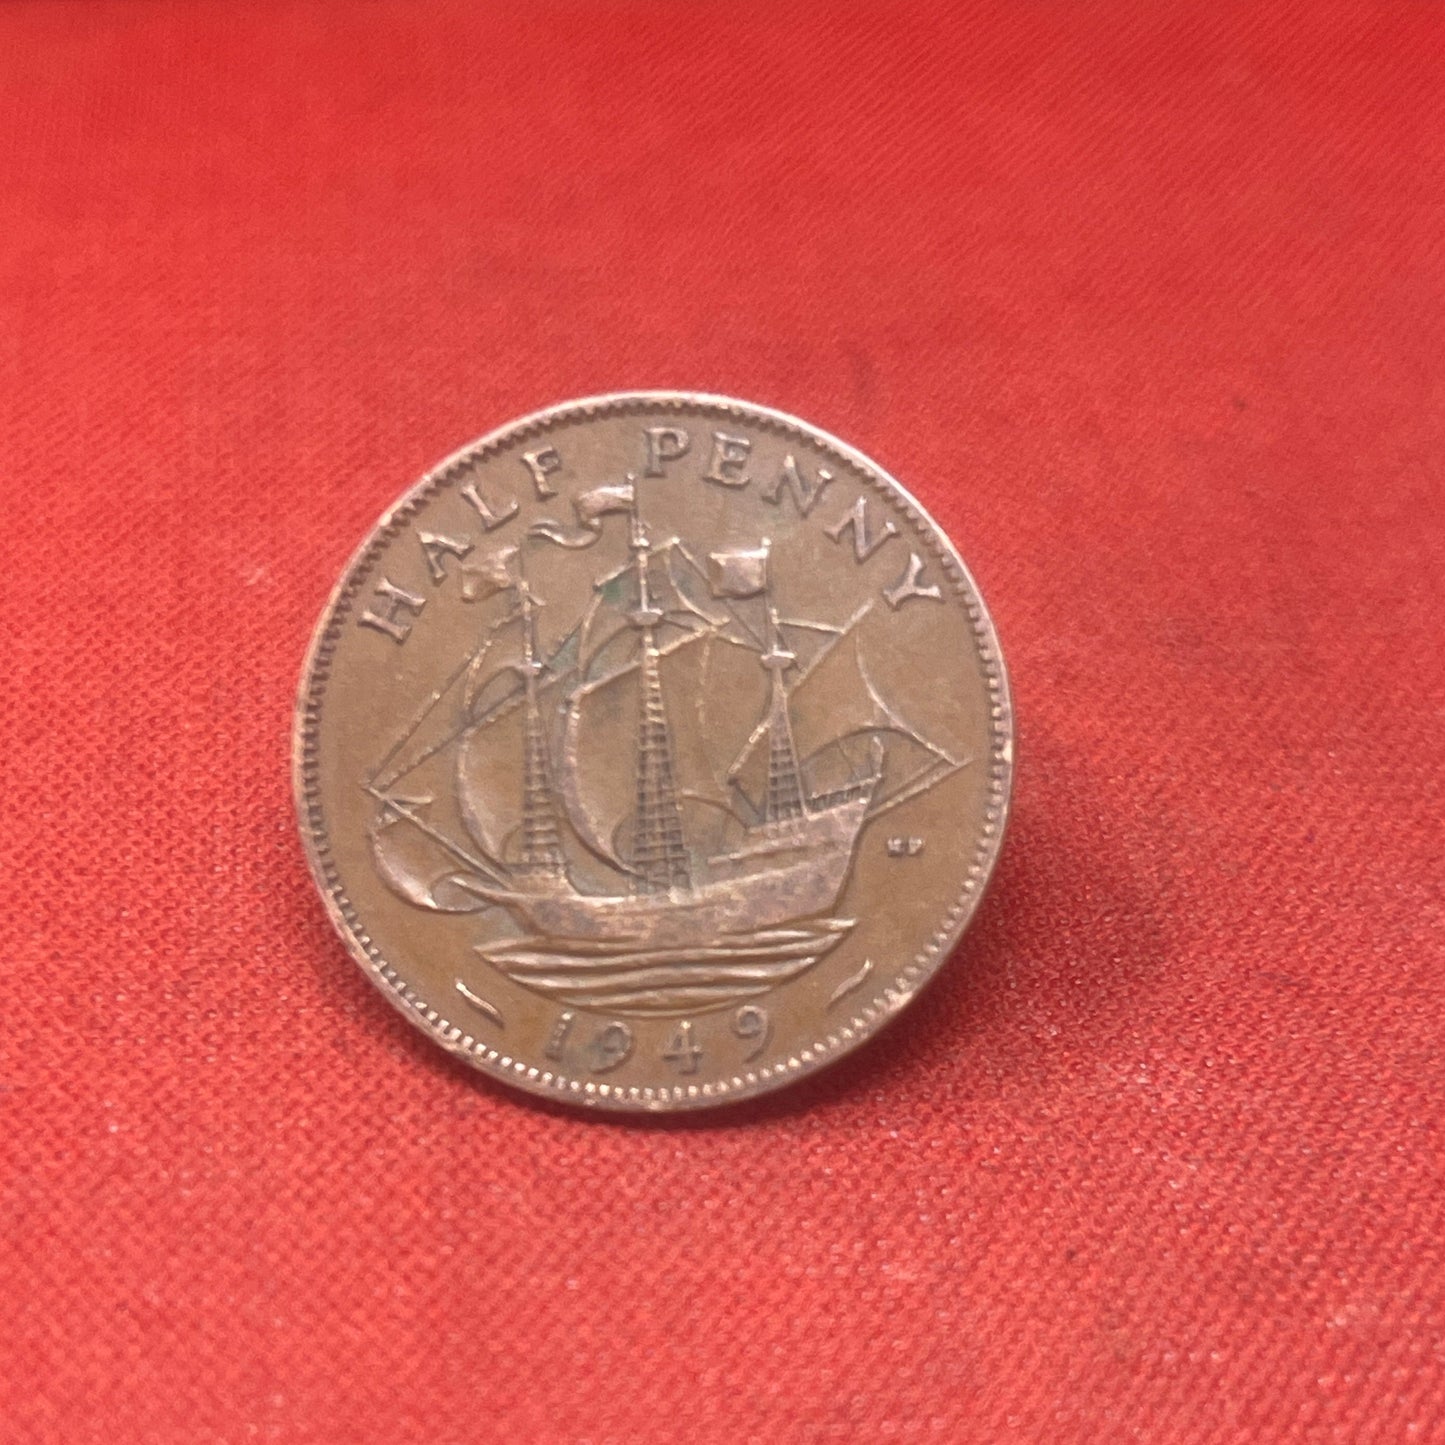 King George VI 1949 Half Penny